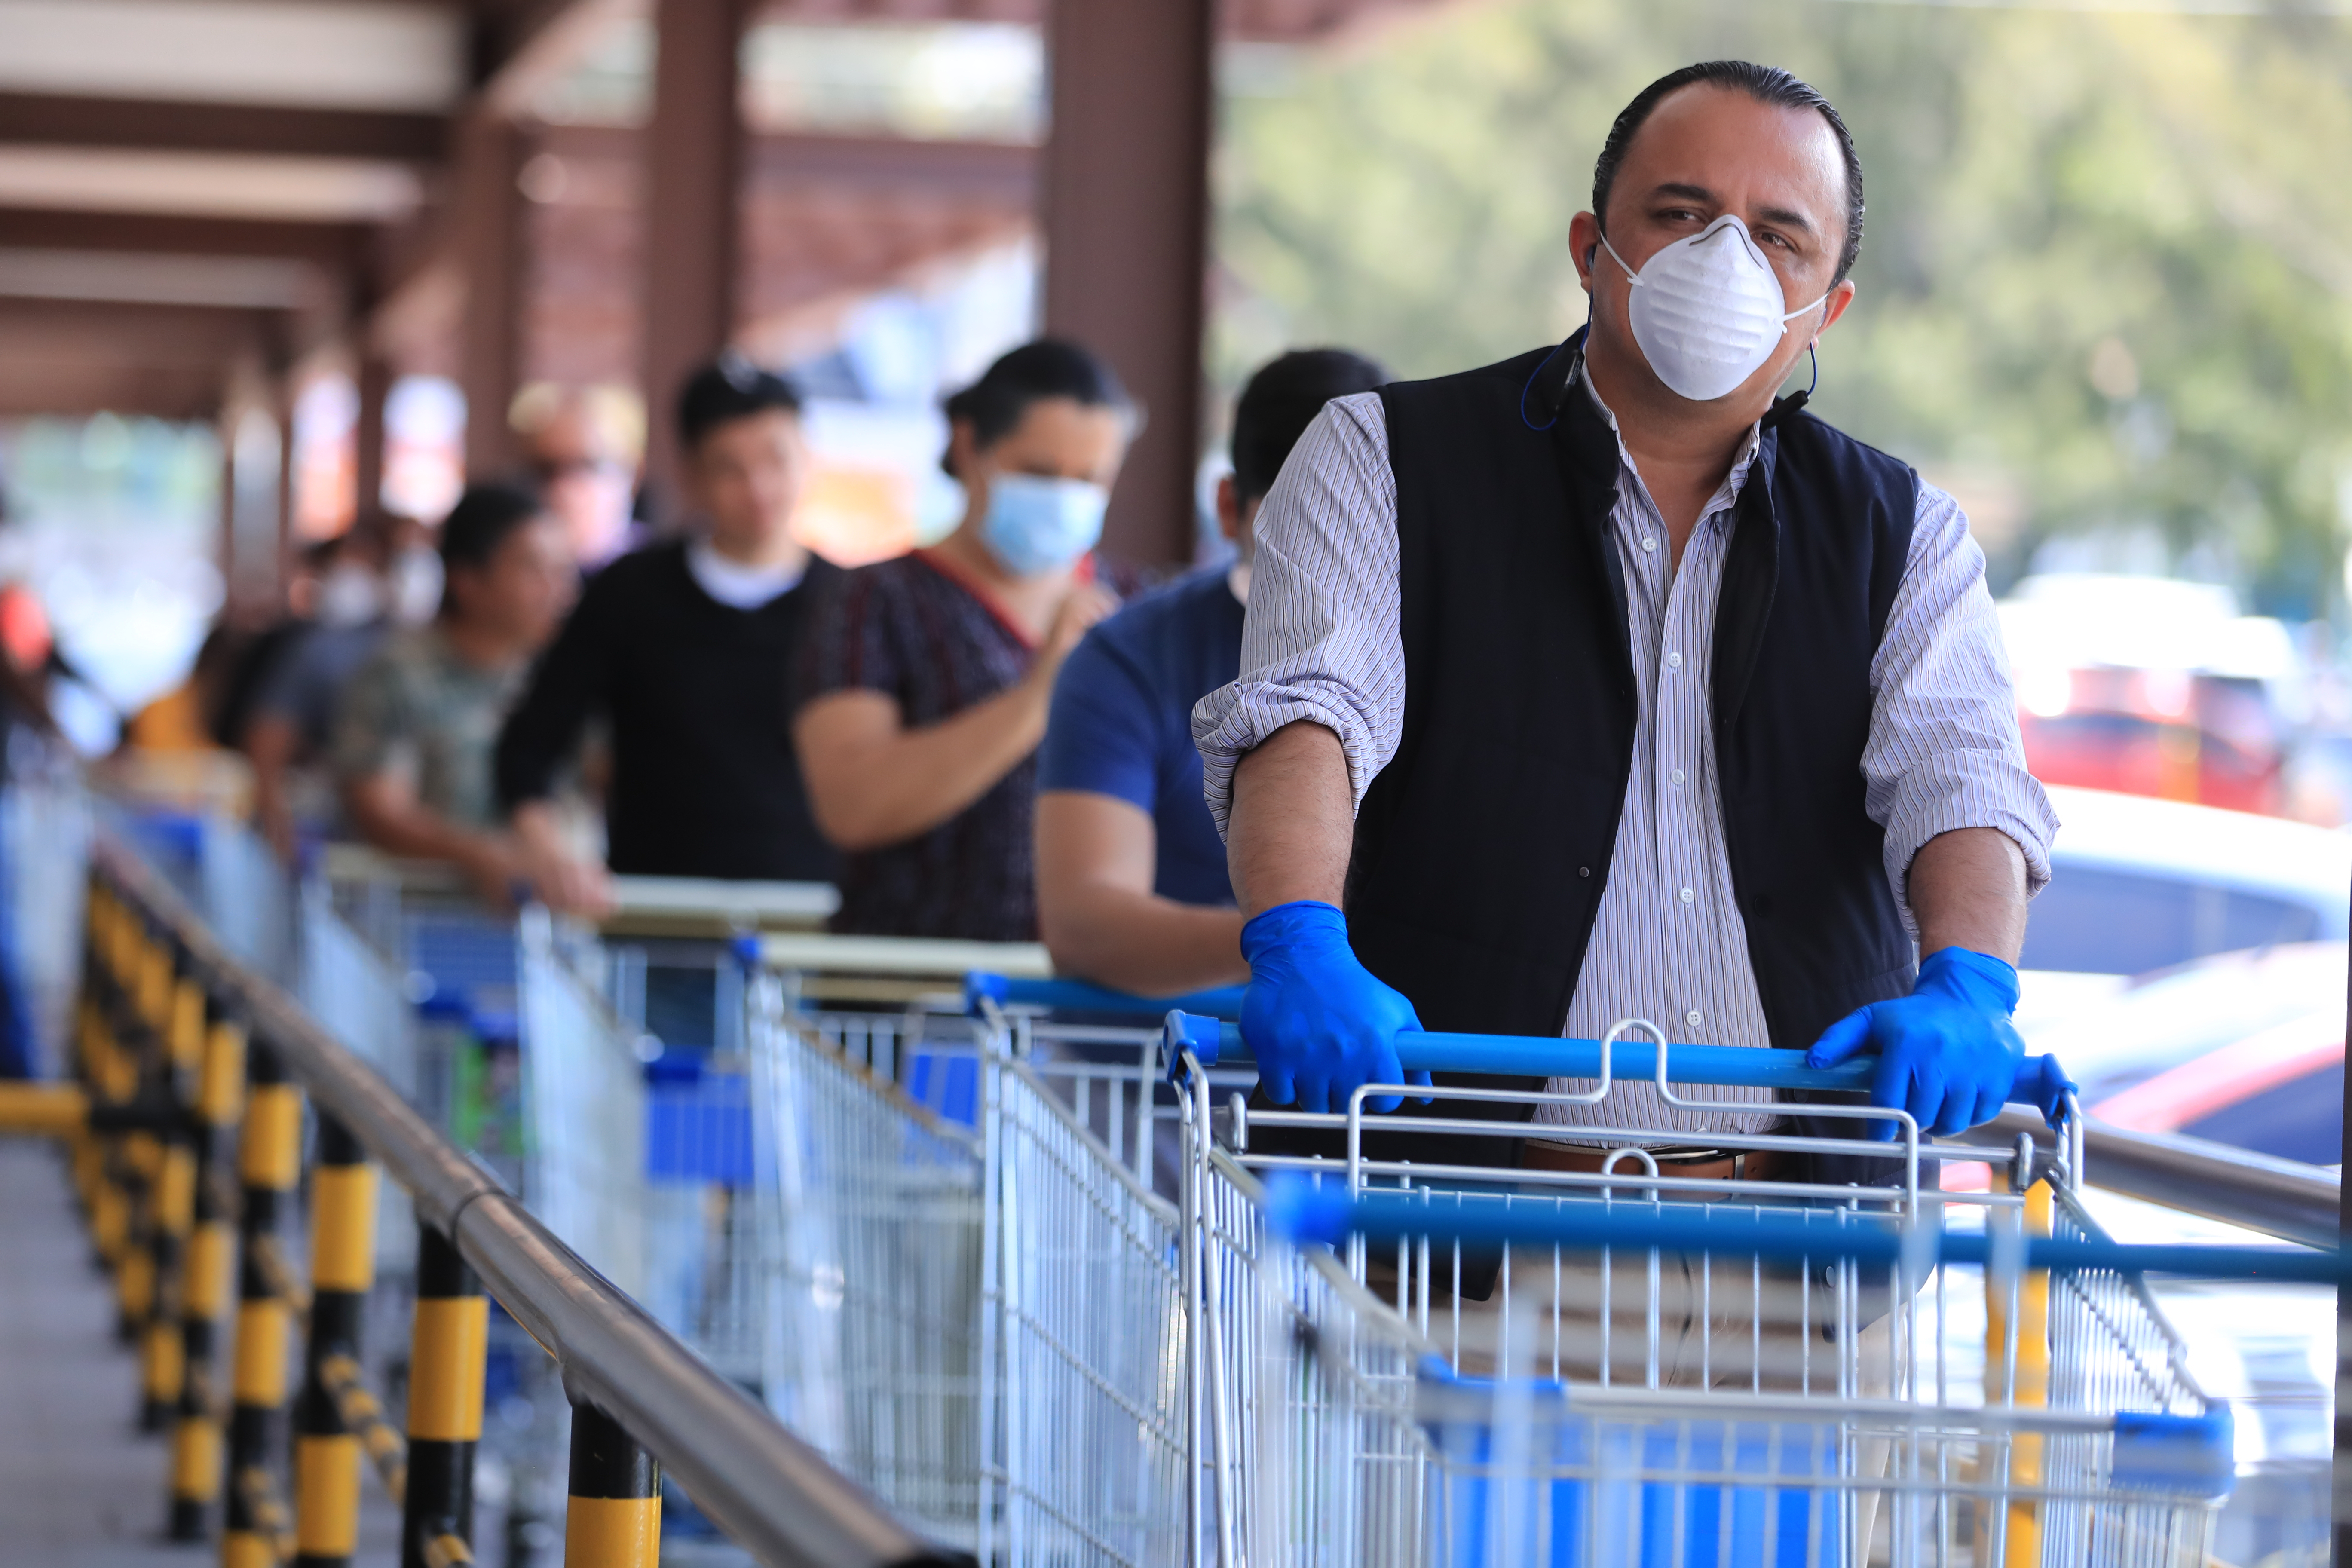 Clientes esperan su turno para ingresar a uno de los supermercados, en los cuales se toman las medidas de prevención para evitar el coronavirus.(Foto Prensa Libre: Juan Diego González)